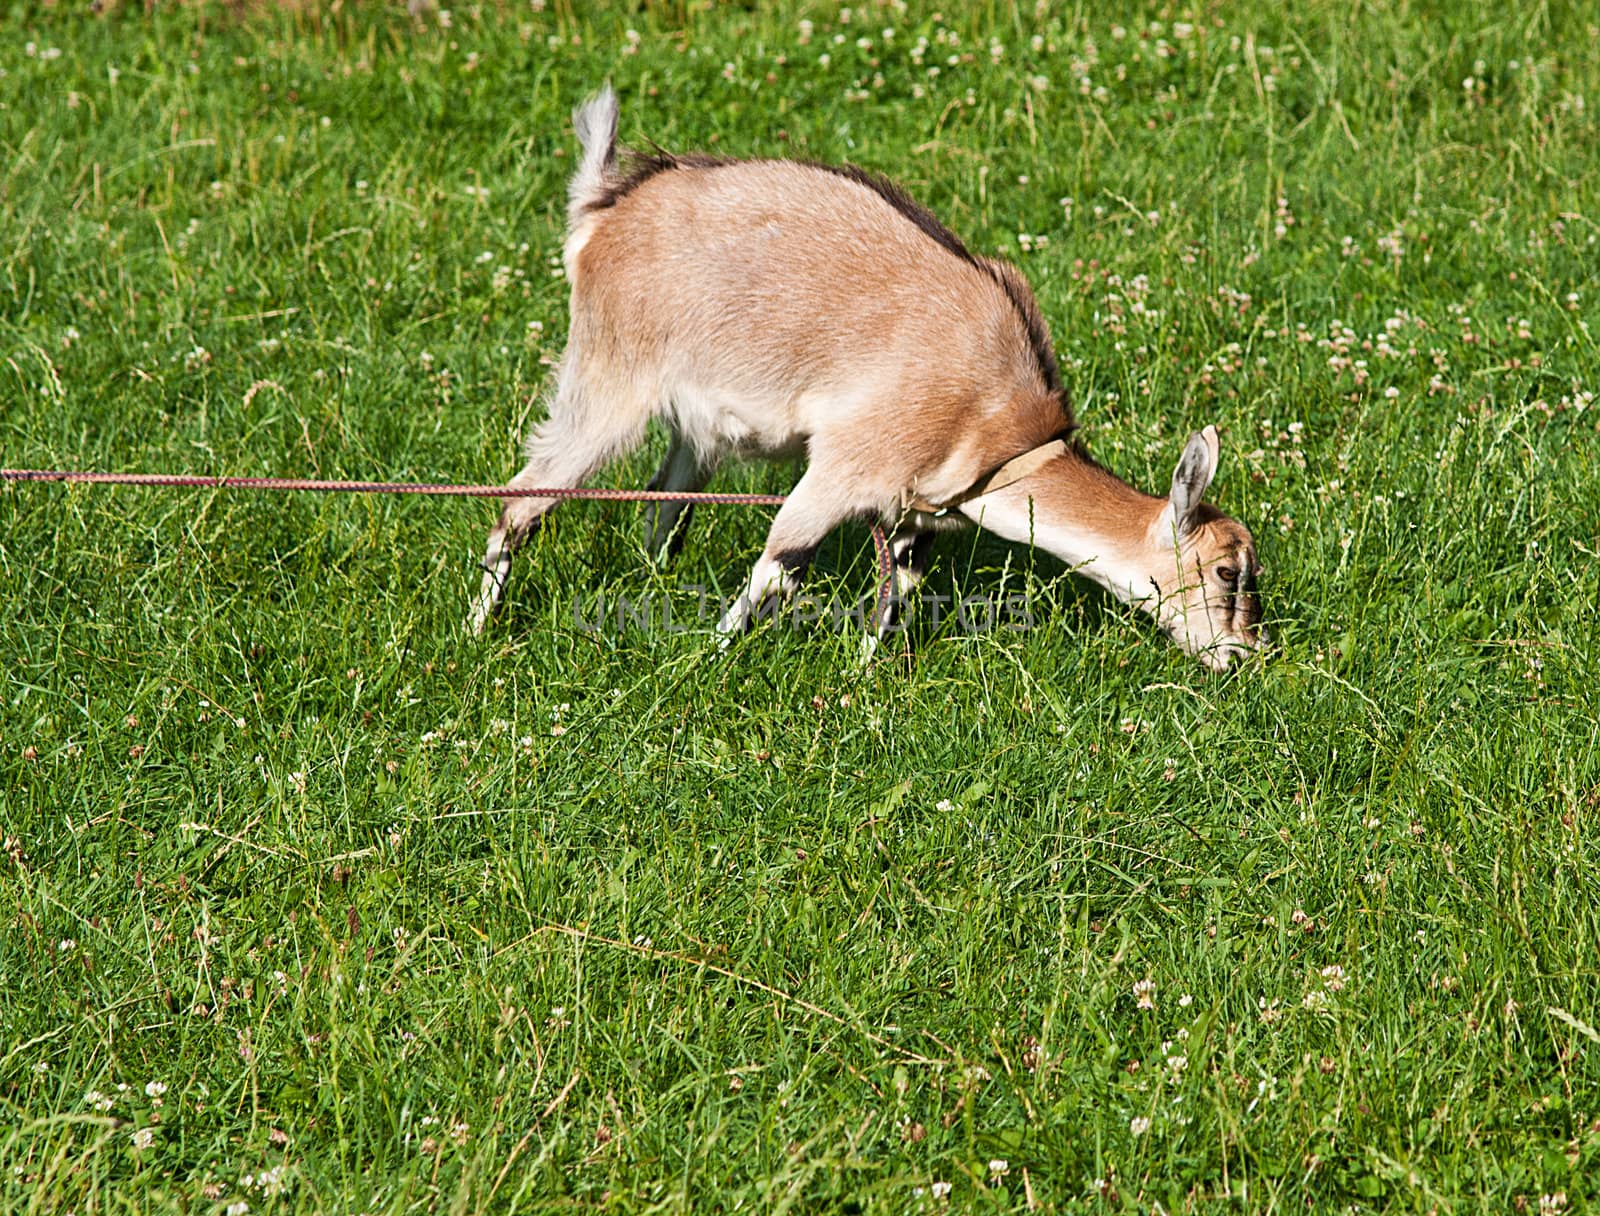 Goat grazed on a meadow